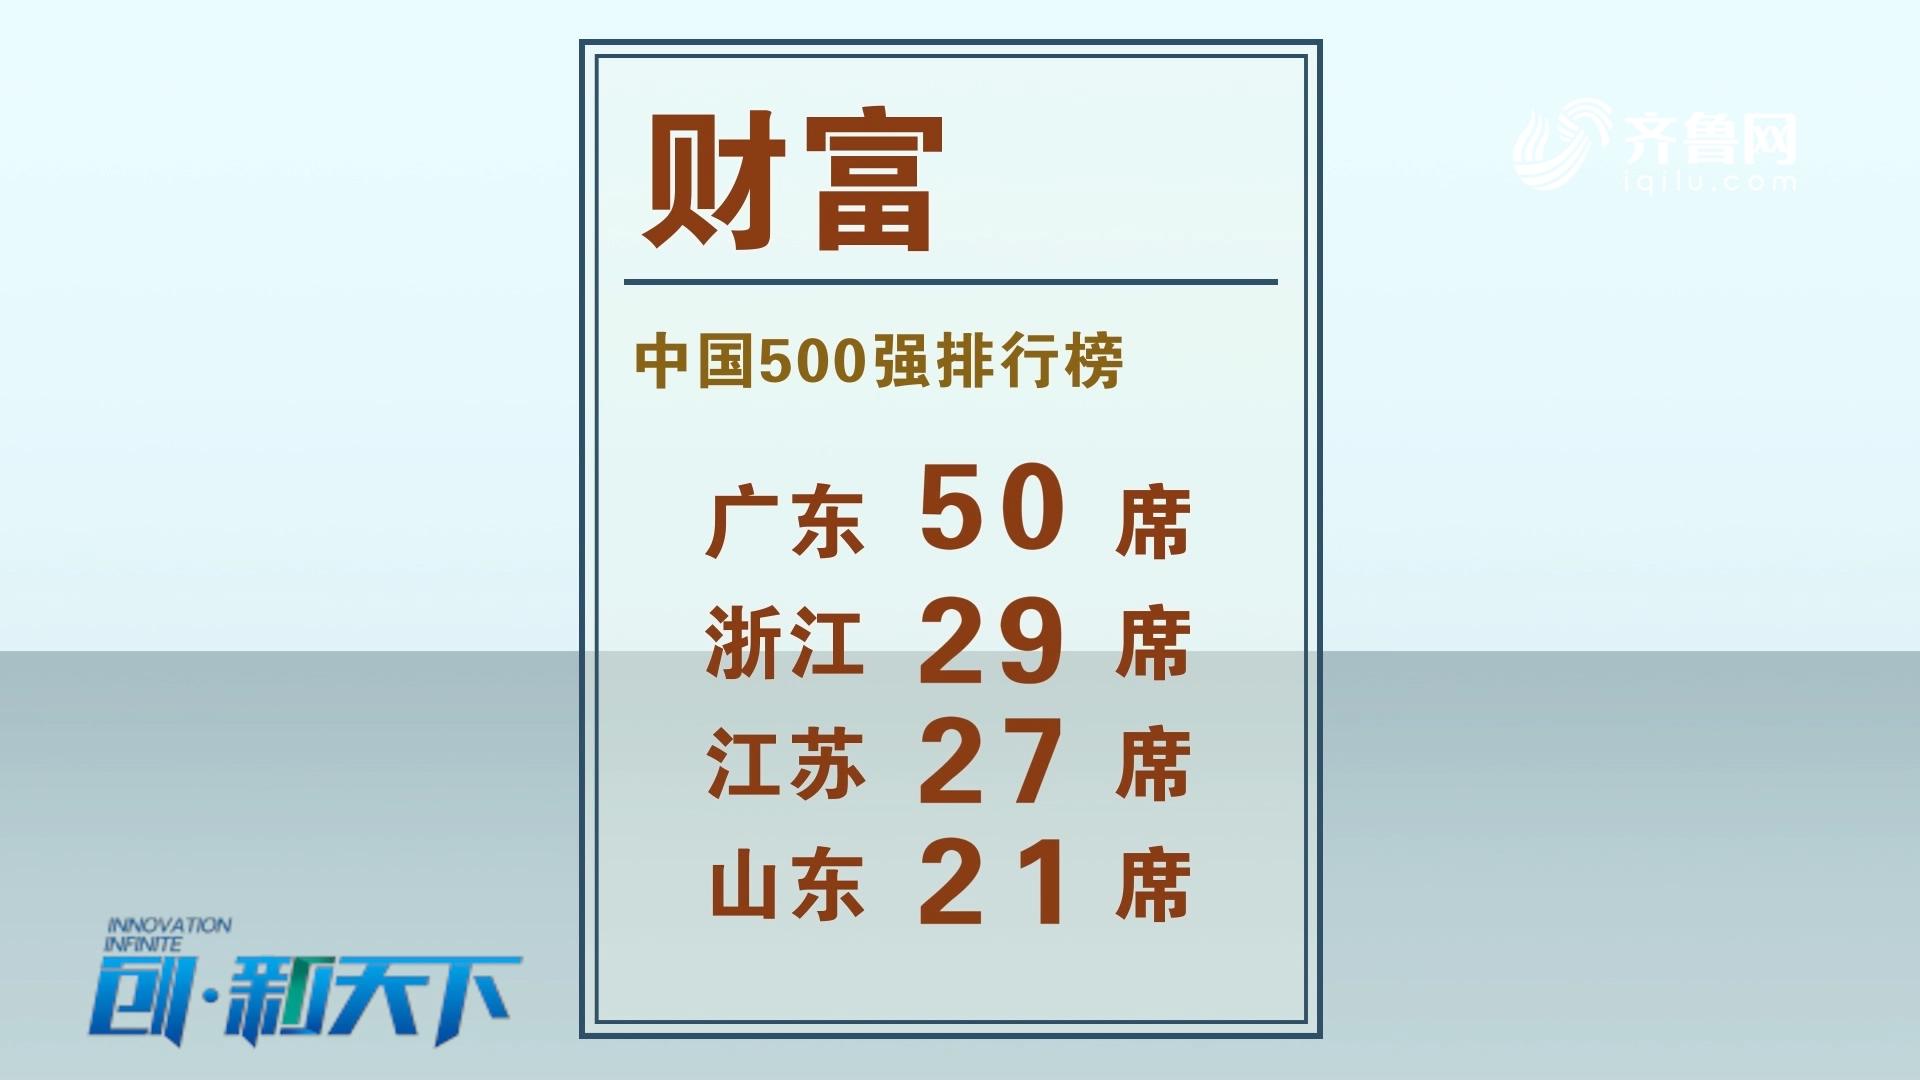 山东21家企业上榜中国500强